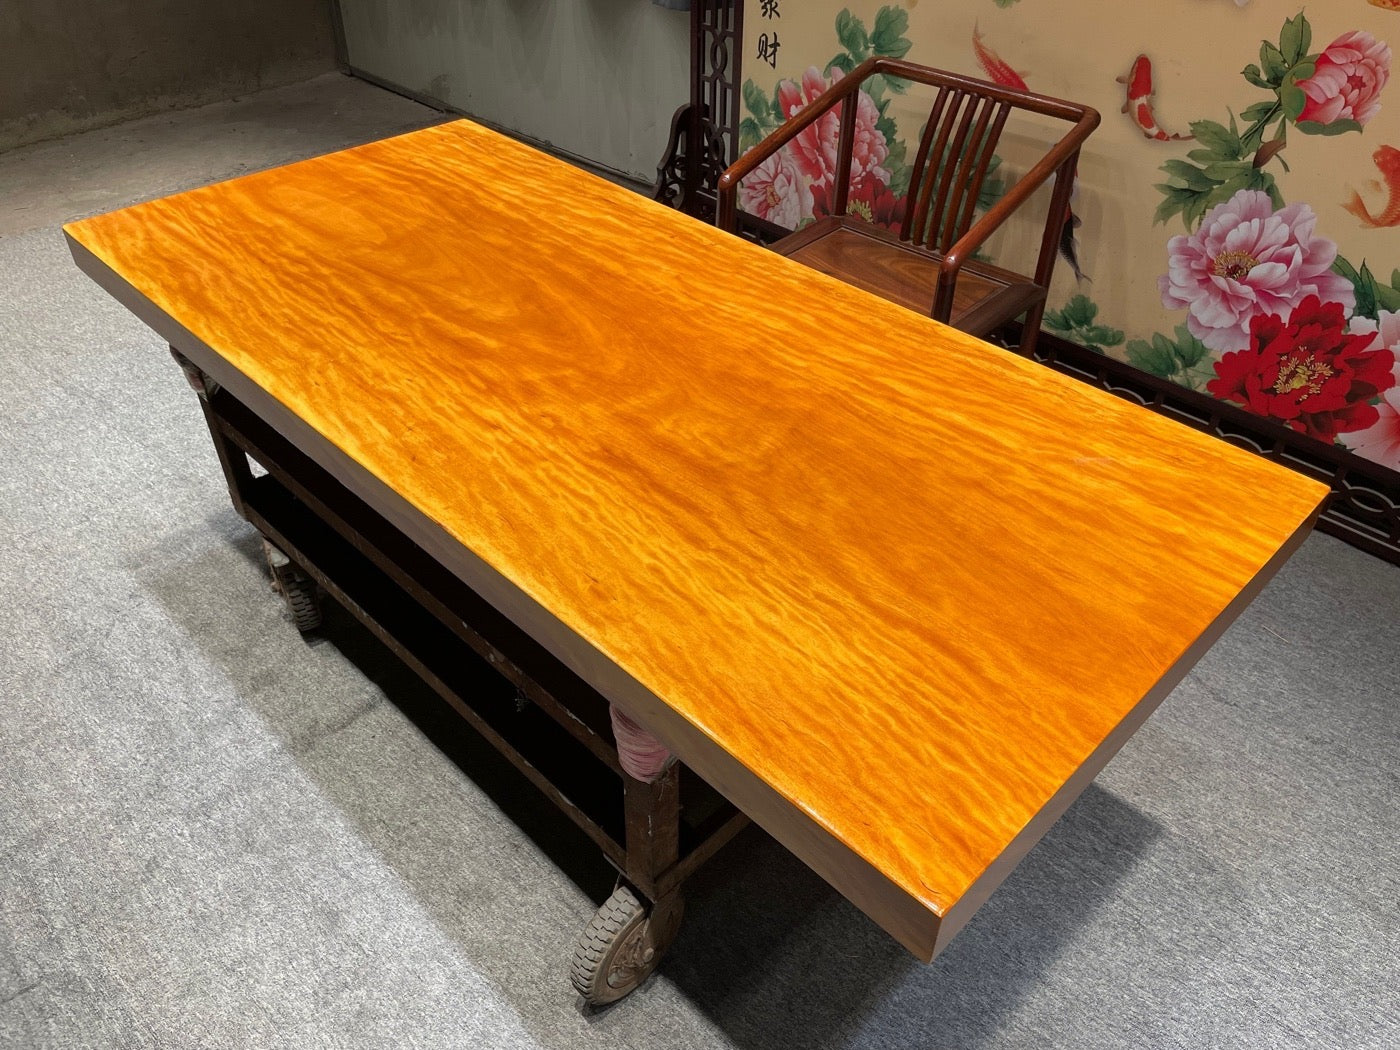 Scrivania da pranzo personalizzata in legno naturale, tavolo color arancione